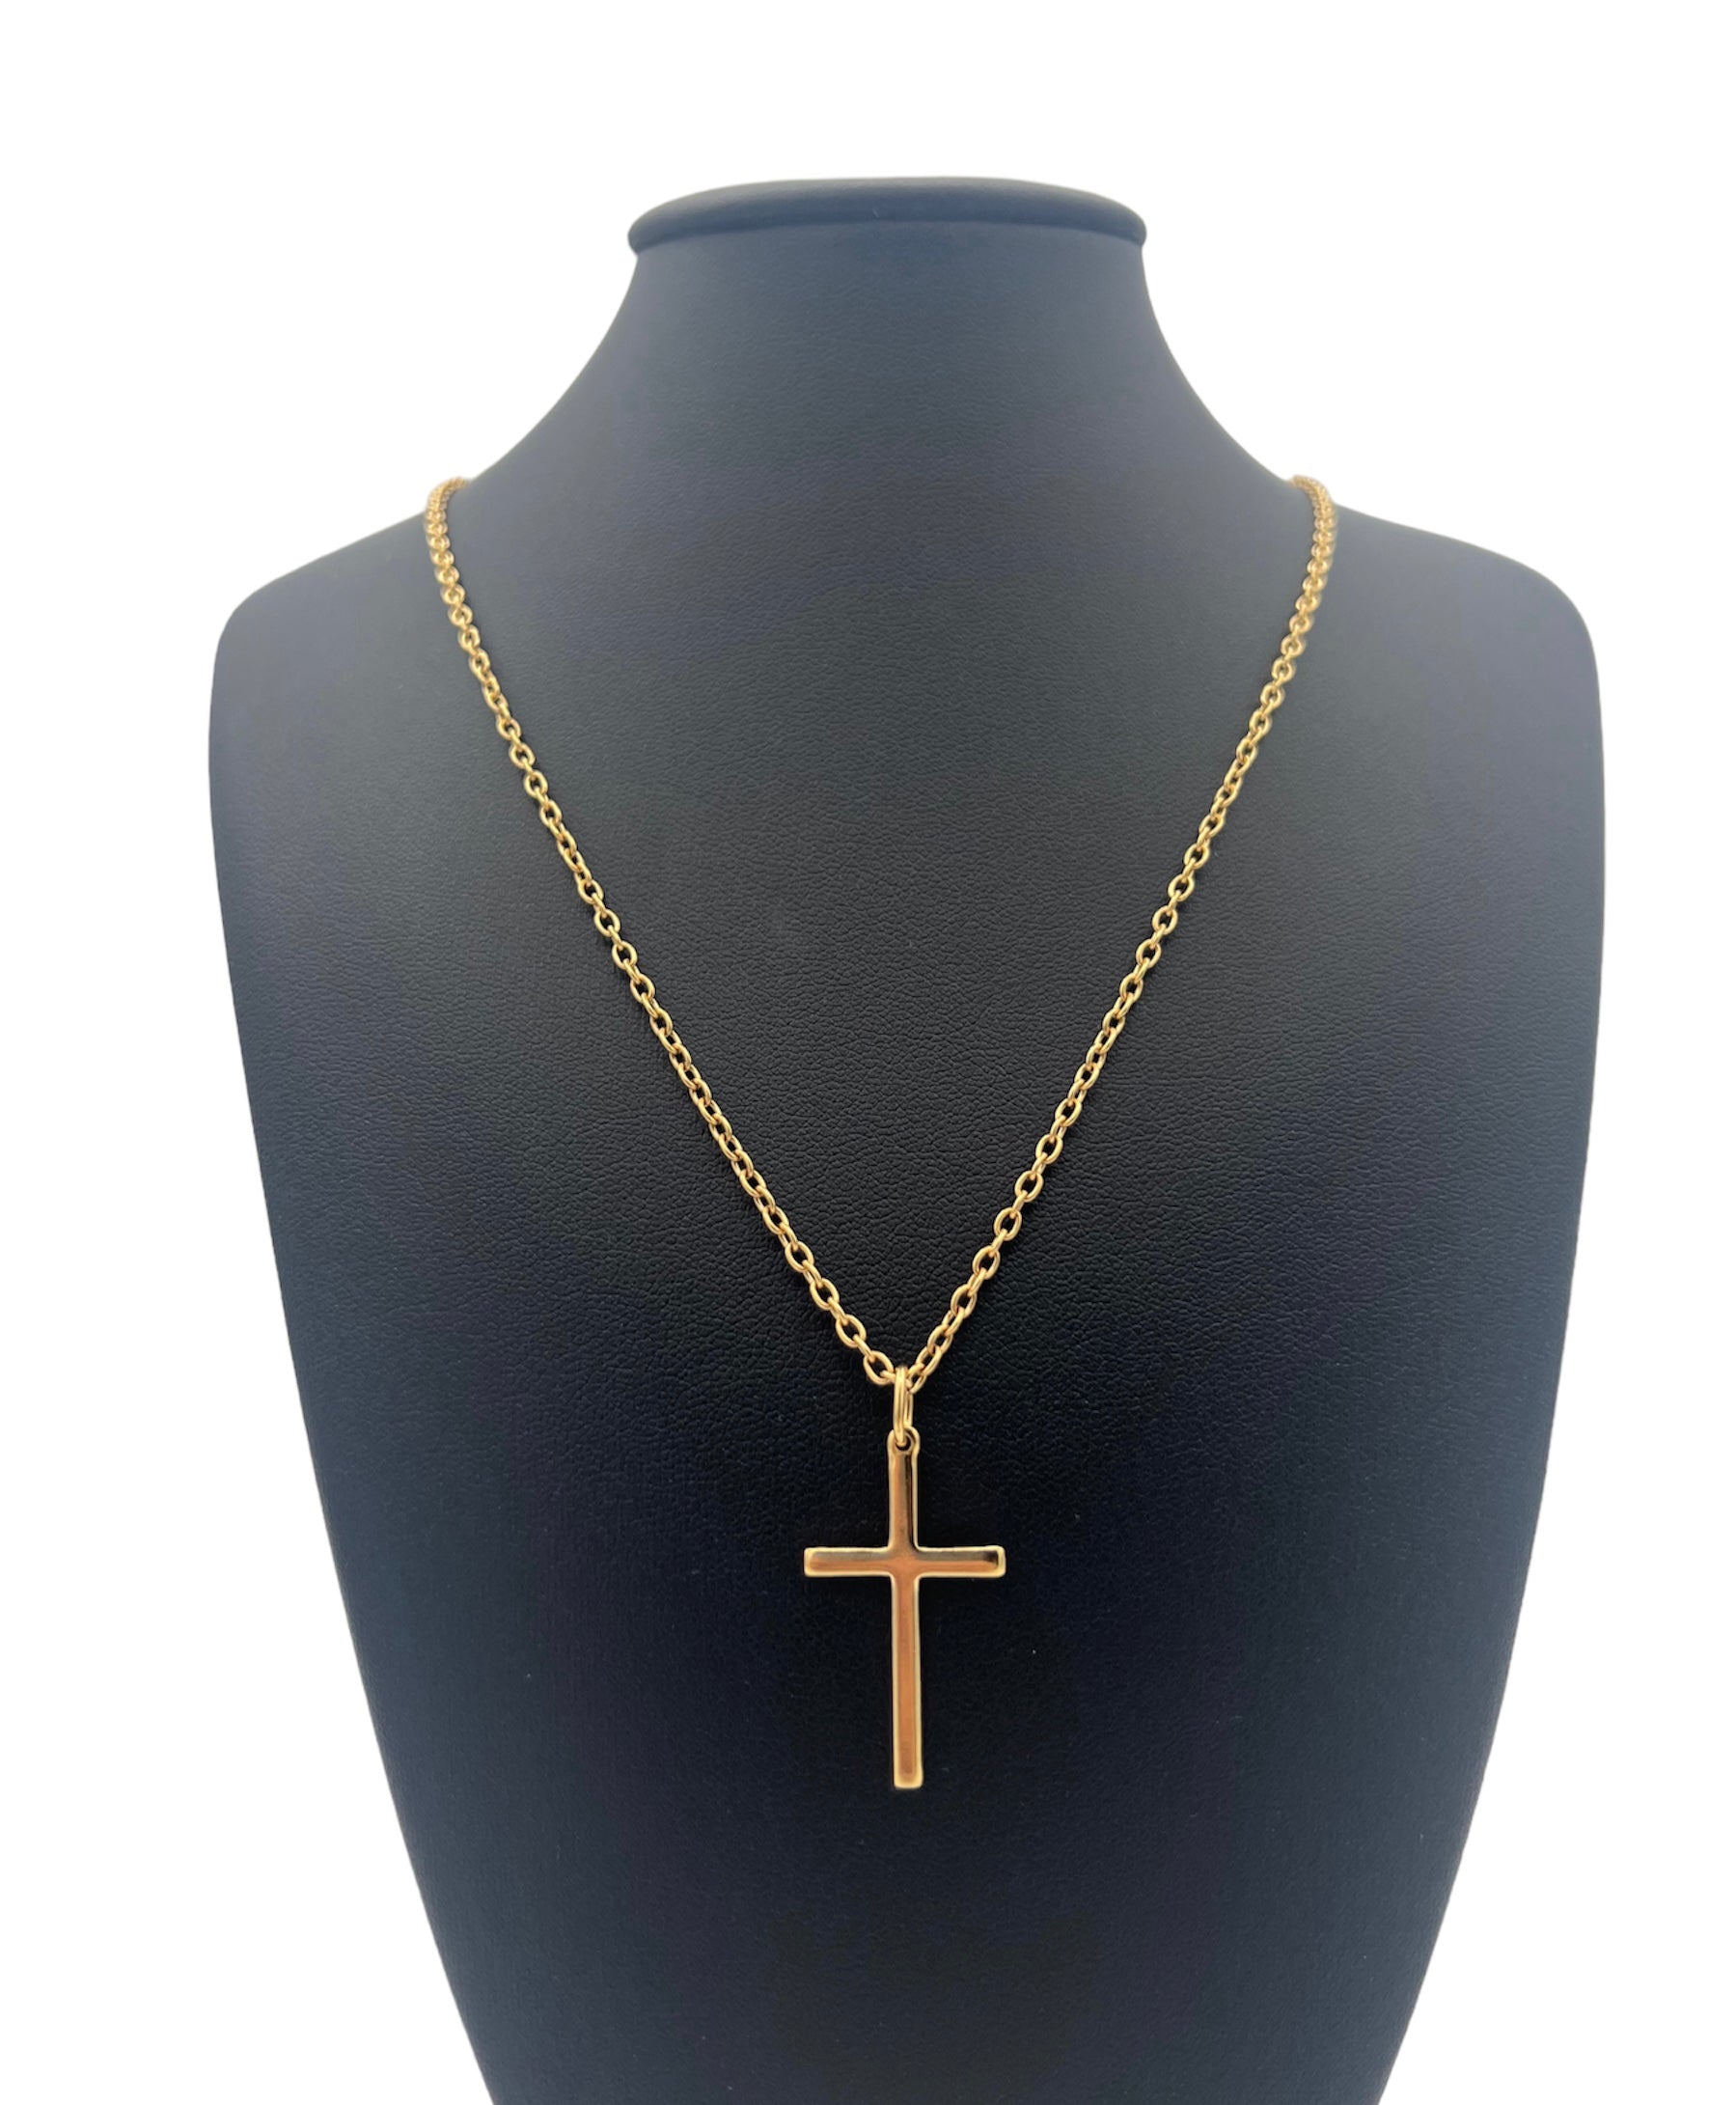 Parure dorée à l'or fin composée d'une croix, 20x30 mm et d'une chaîne, maille type forçat, 50 cm